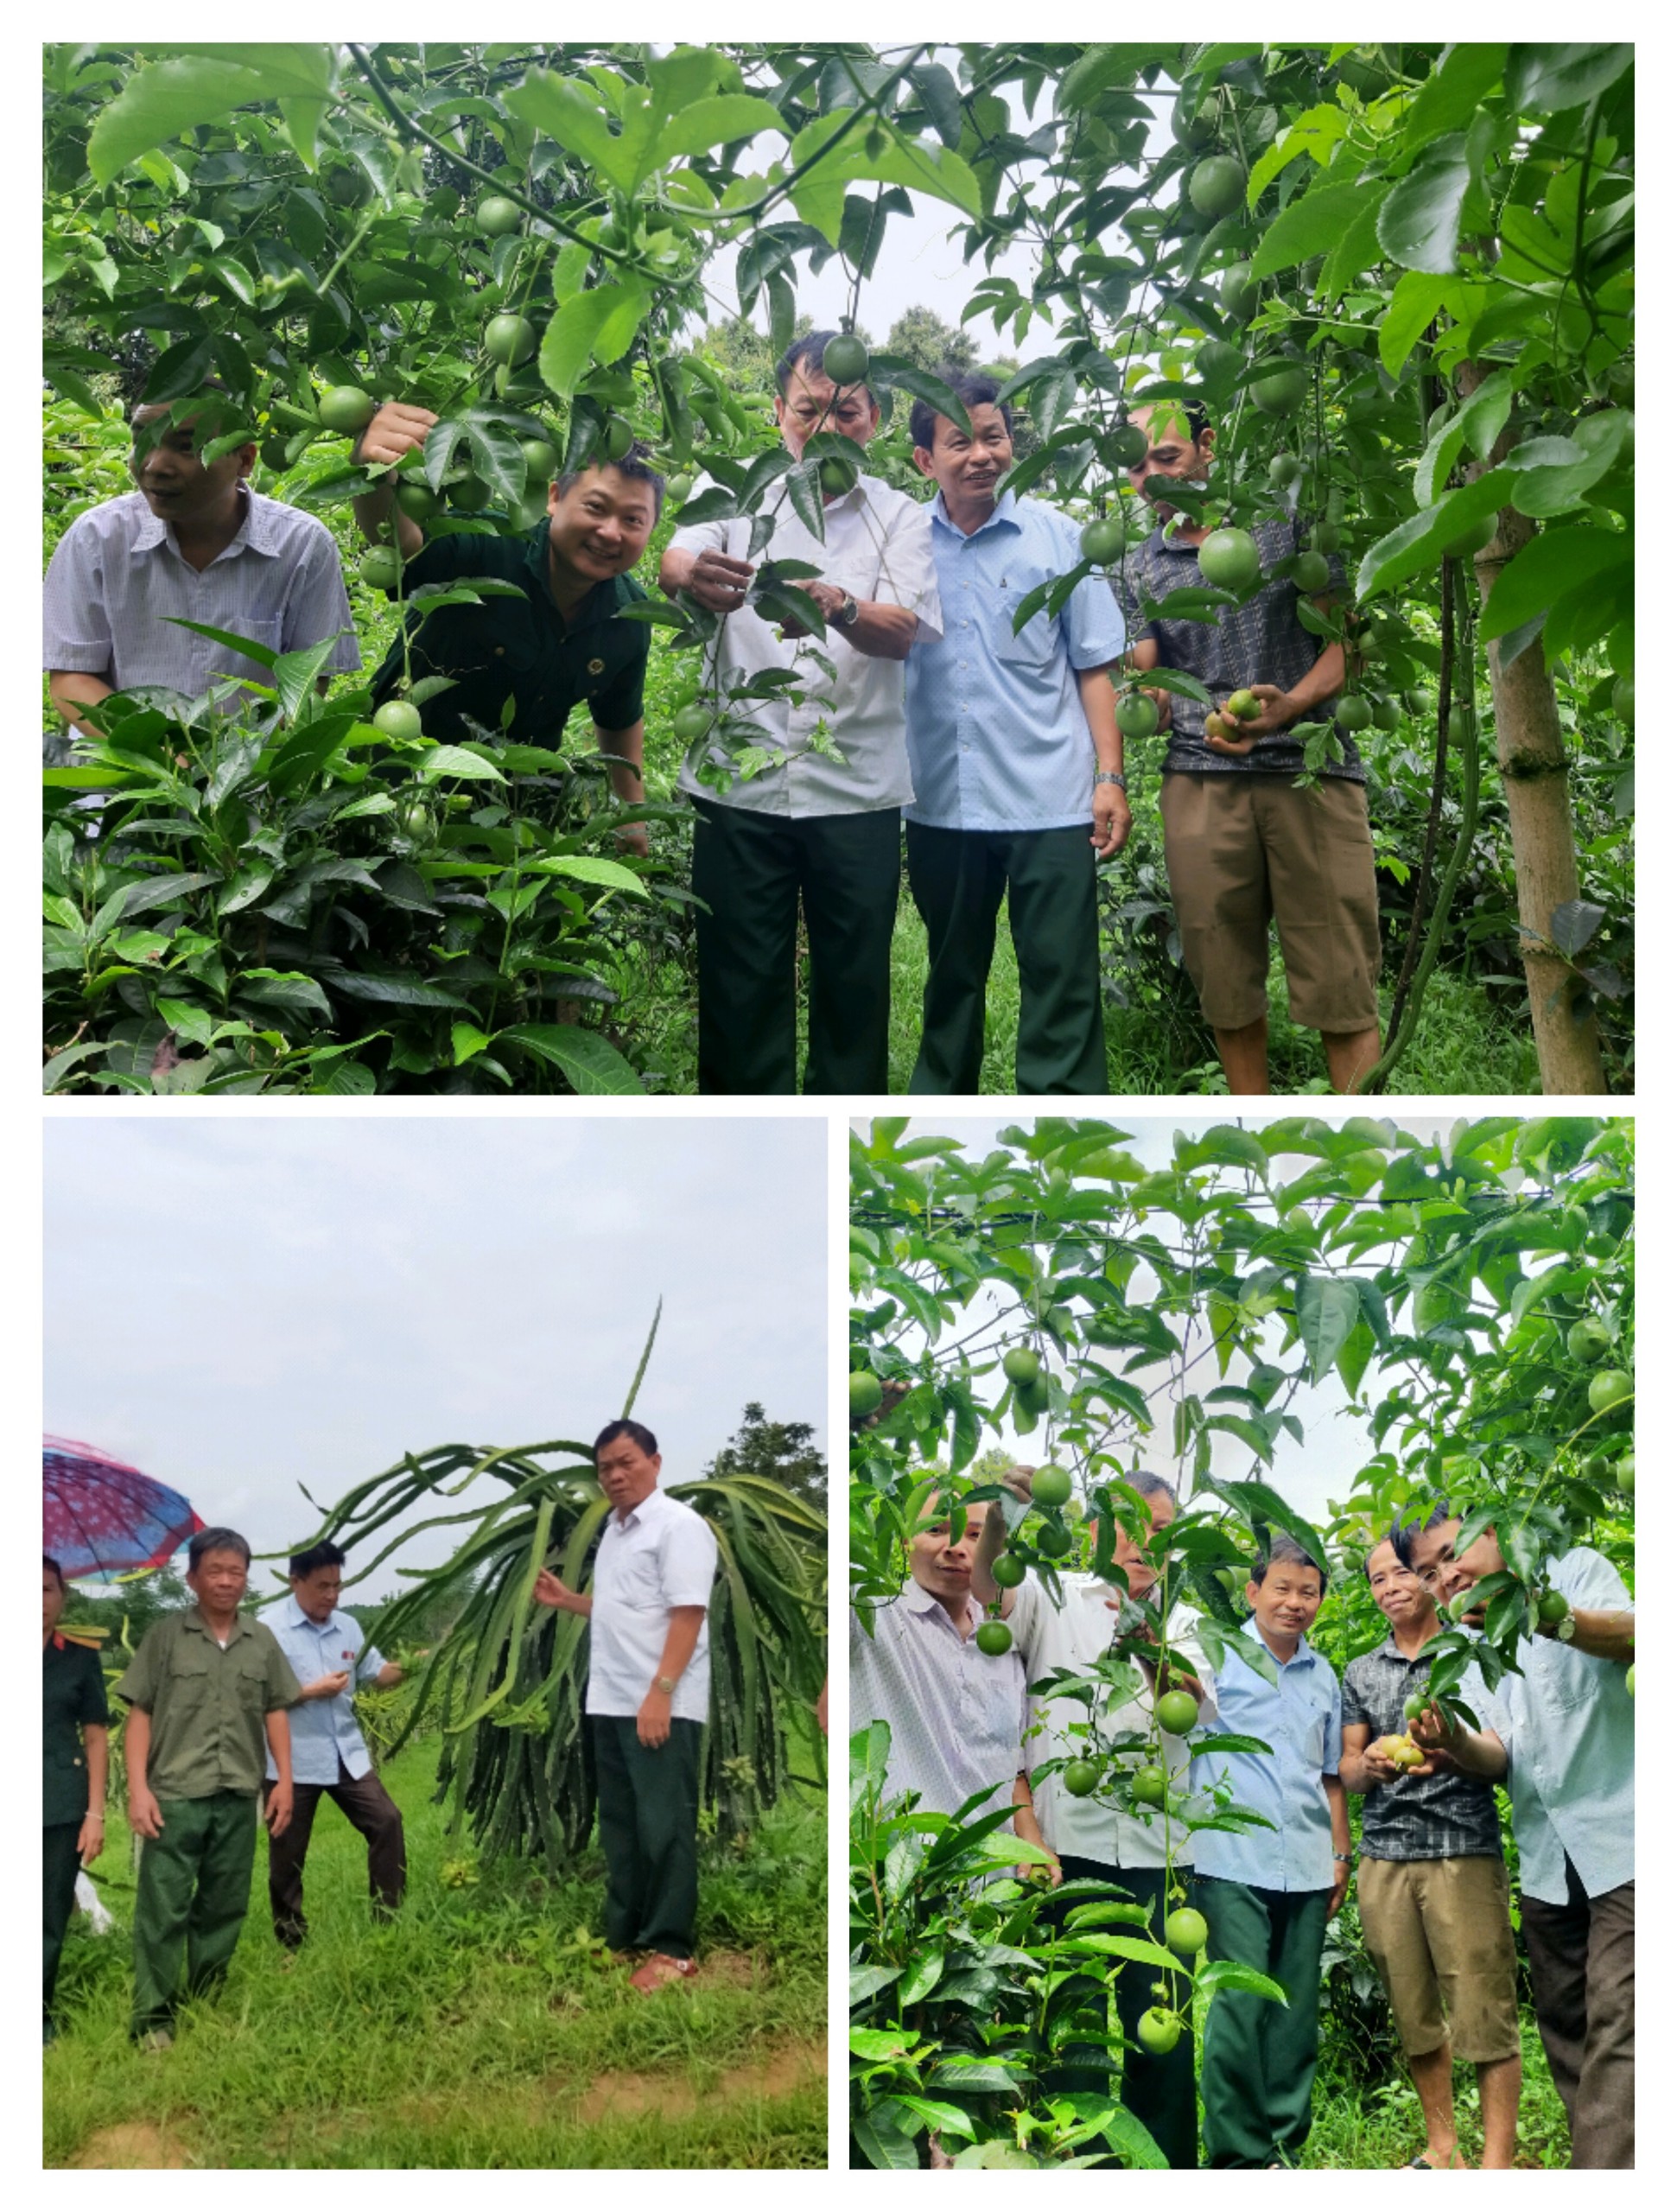 Thực hiện Kế hoạch kiểm tra, giam sát công tác Hội Cựu chiến binh huyện Bắc Quang, về công tác cải tạo vườn tạp phát triển king tế cho hội viên theo đề án 05 của tỉnh Uỷ.